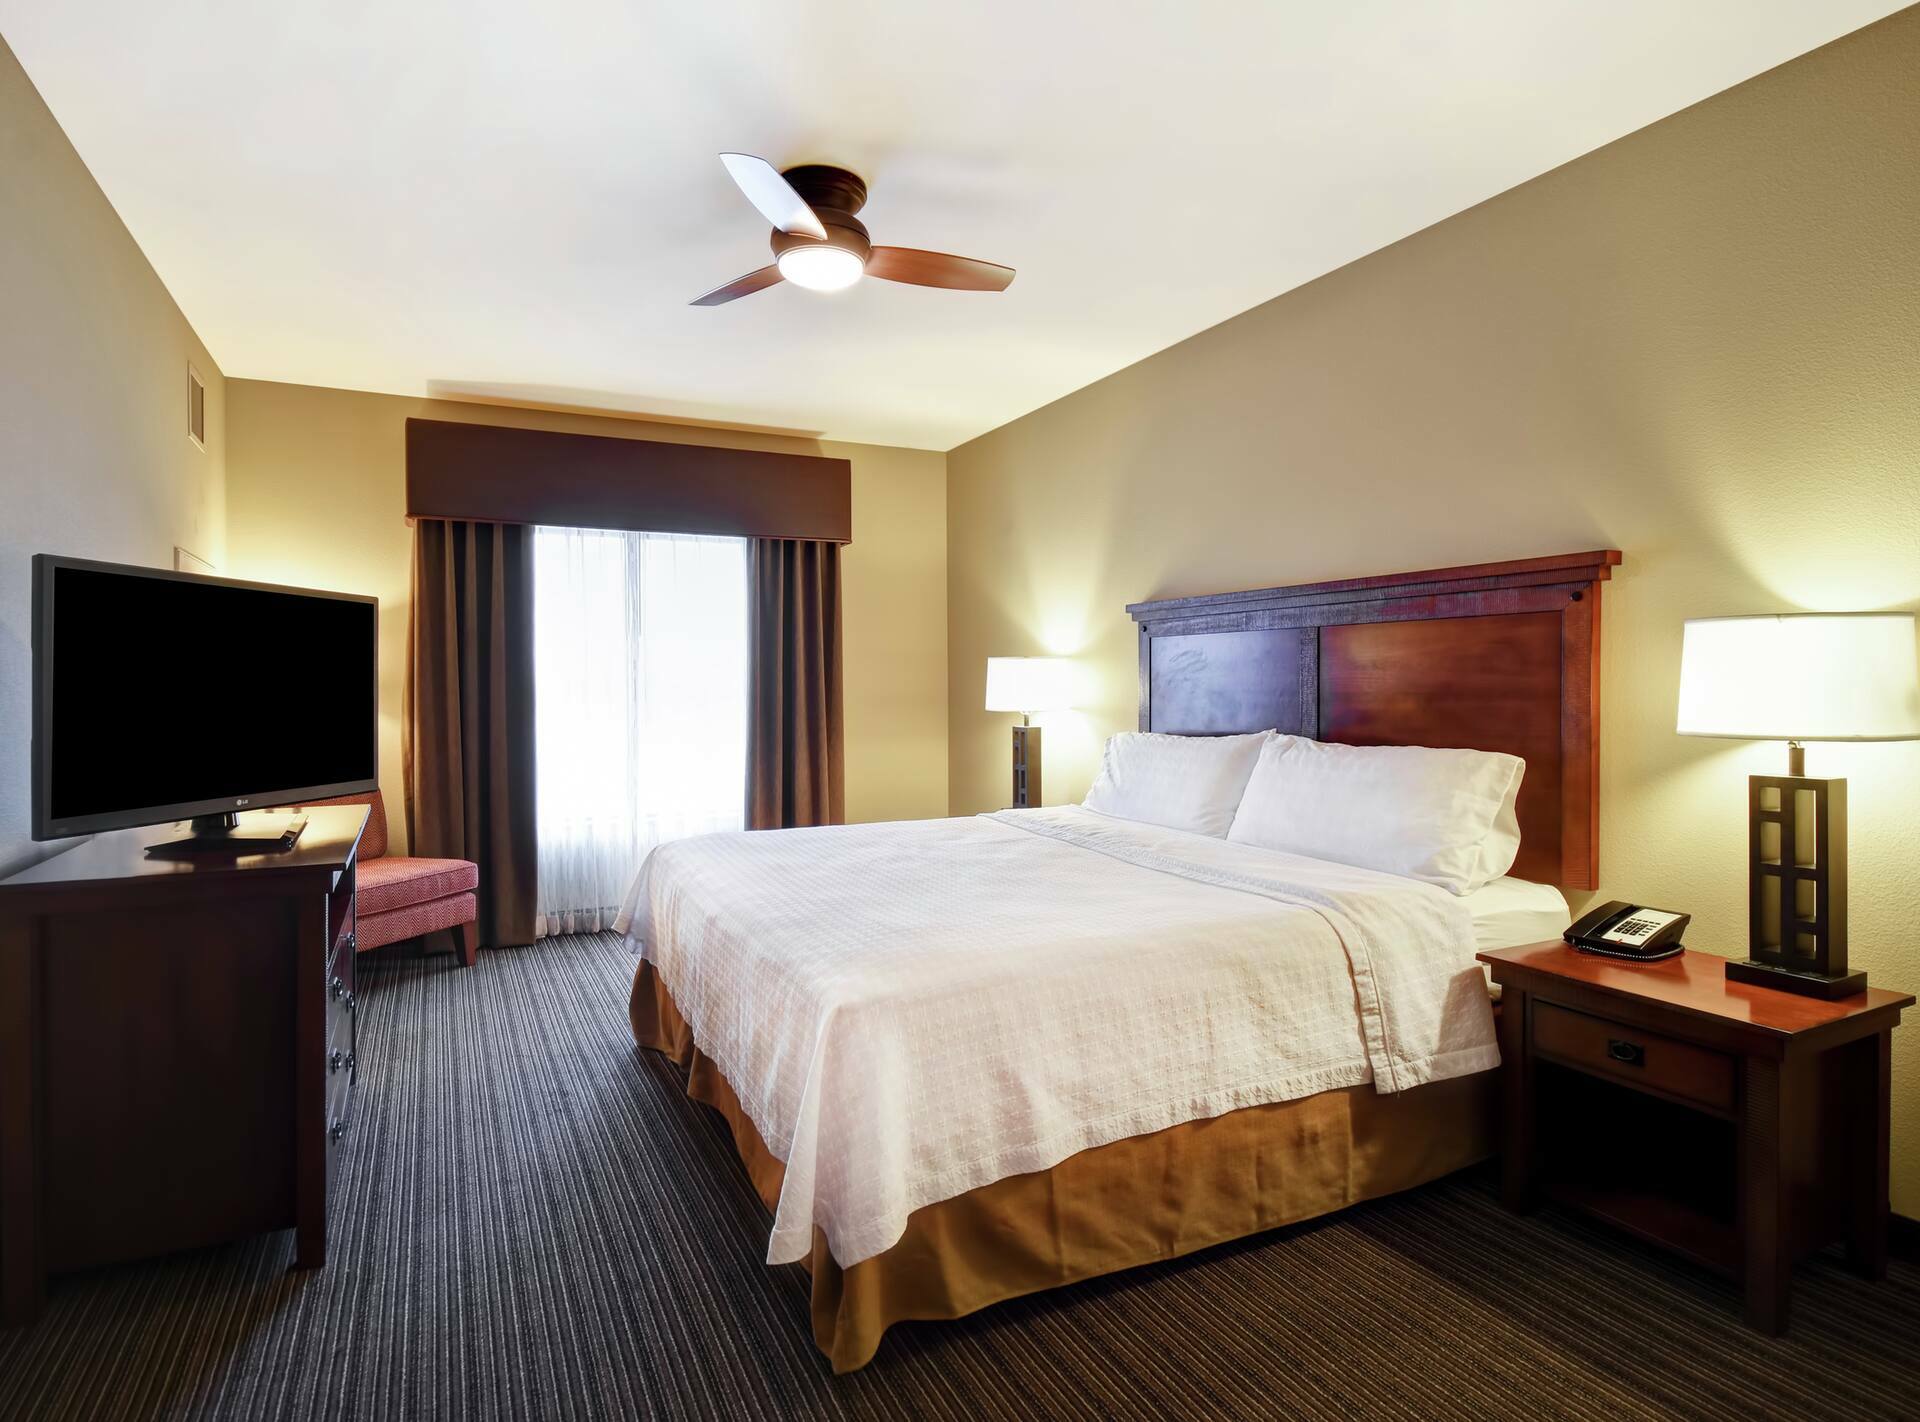 Photo of Homewood Suites by Hilton Kalispell, MT, Kalispell, MT